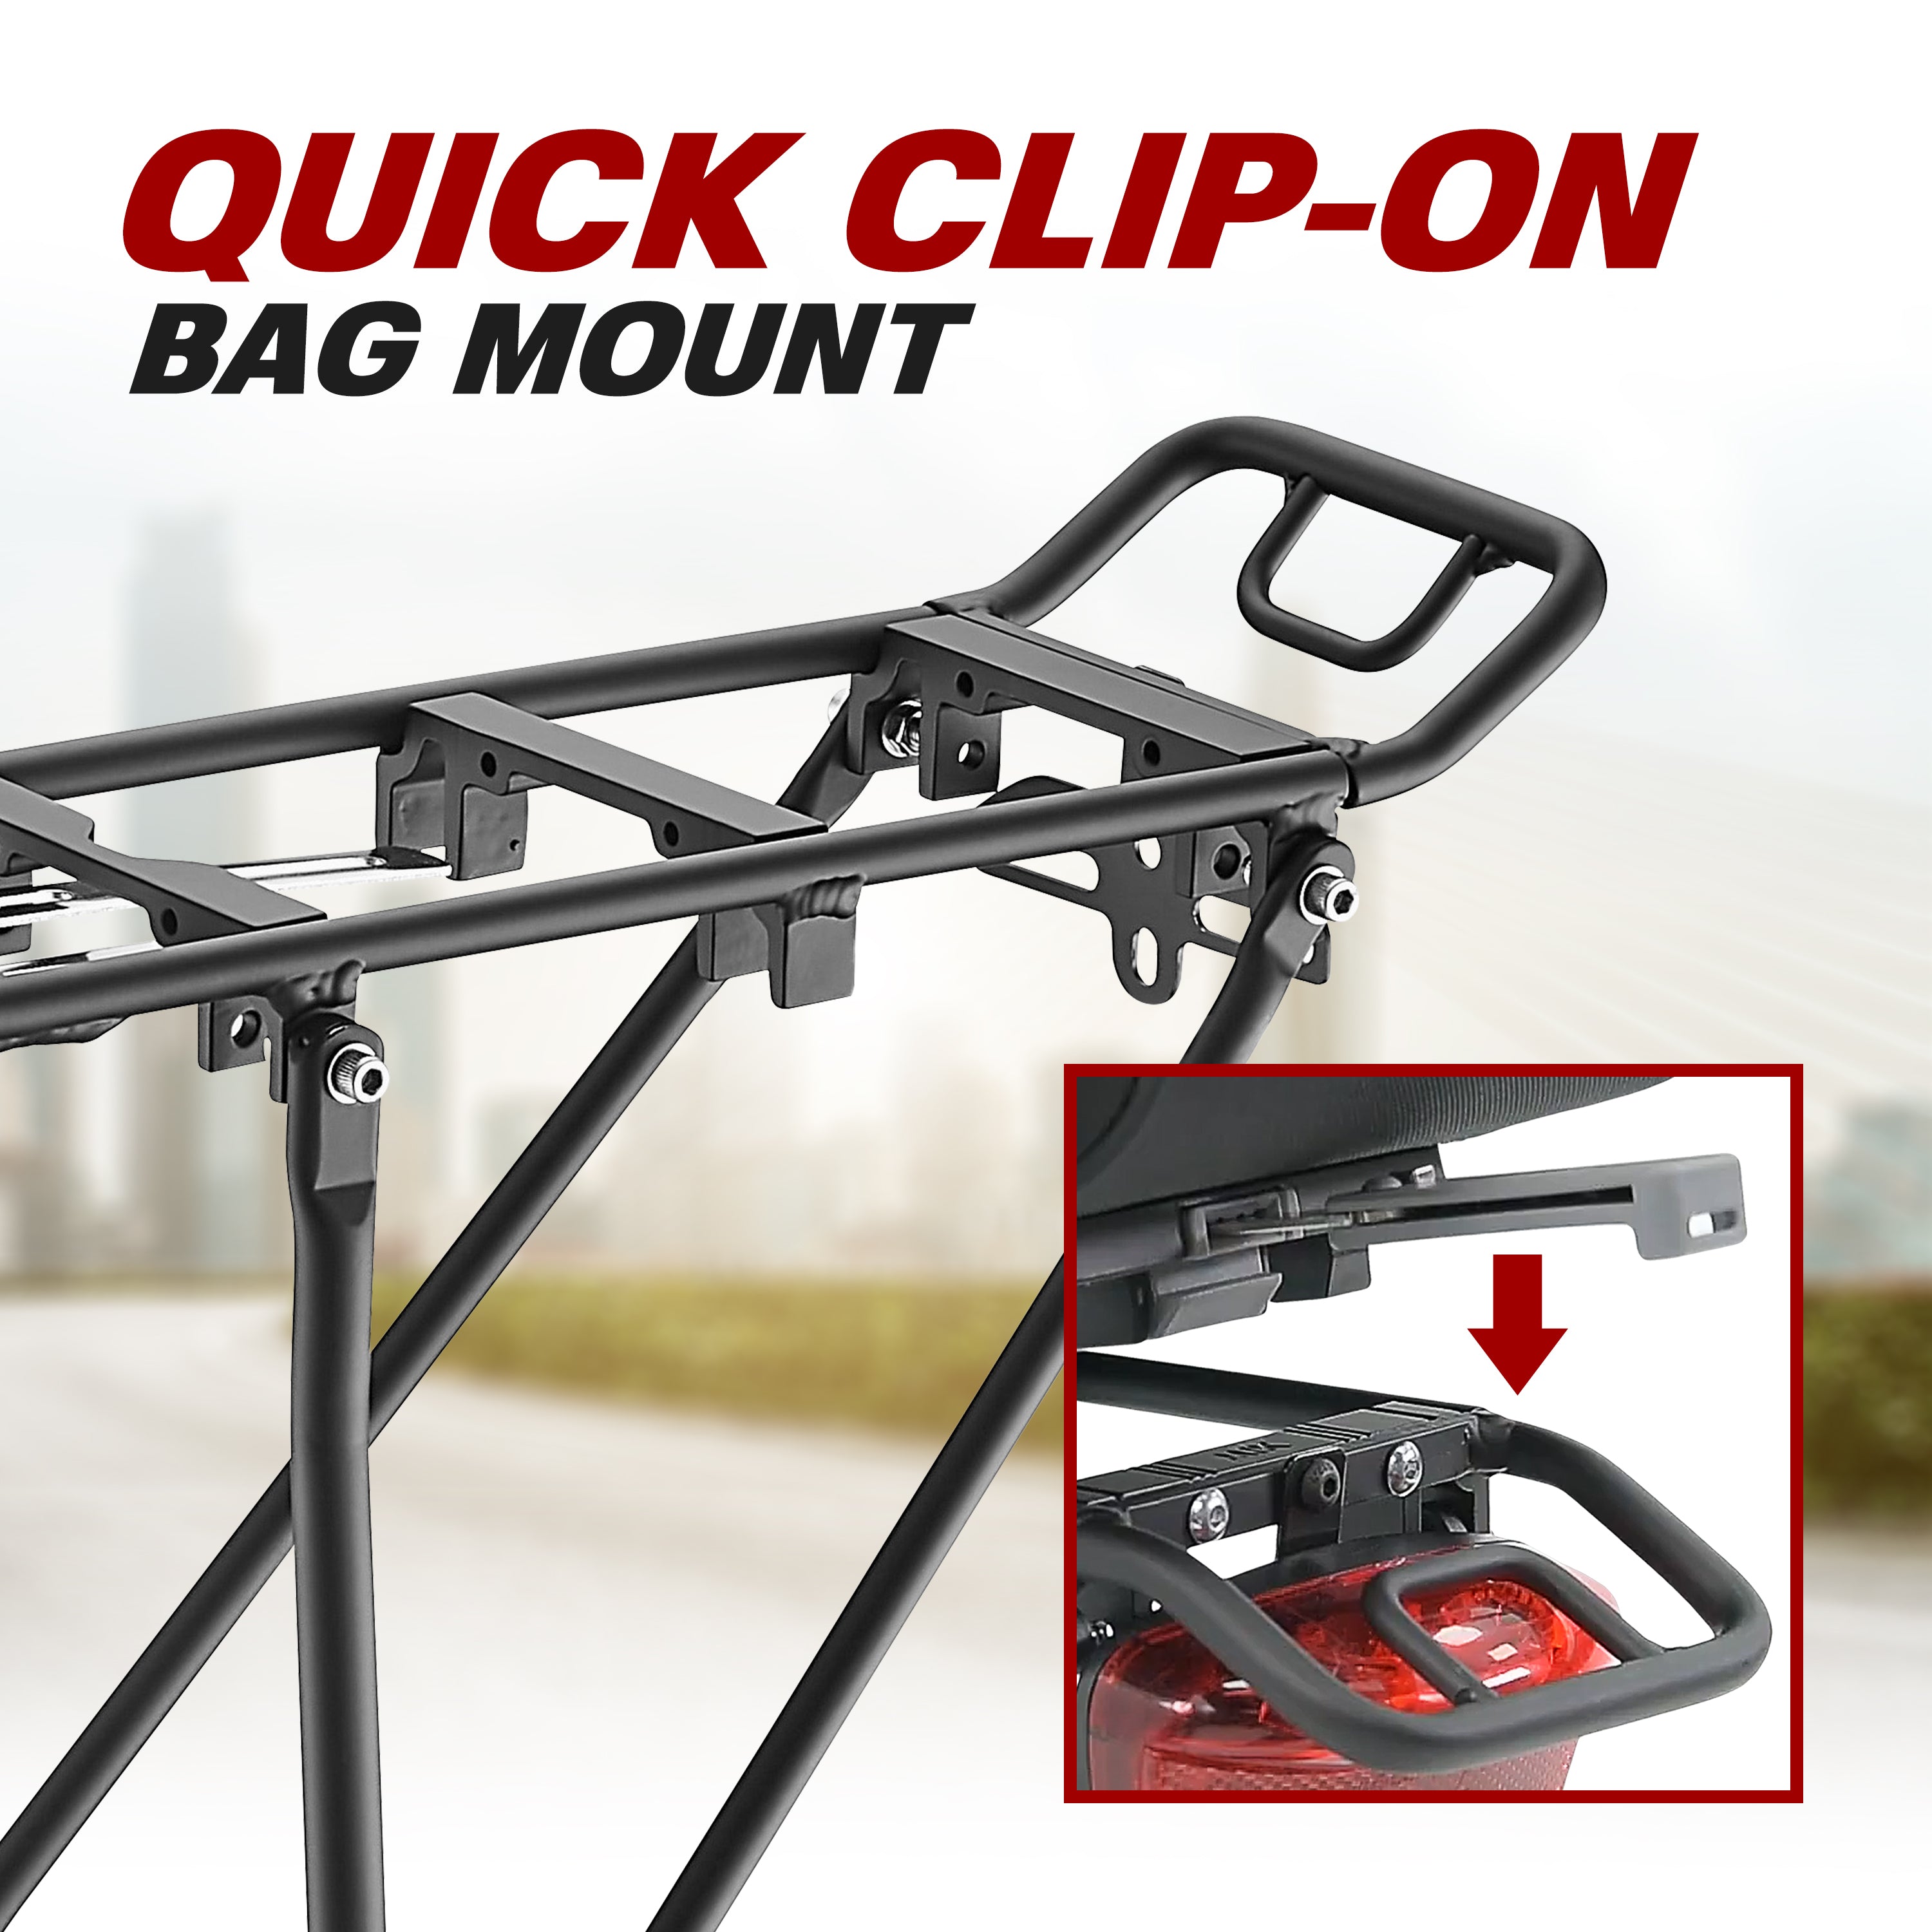 Clip-On Bag Mount